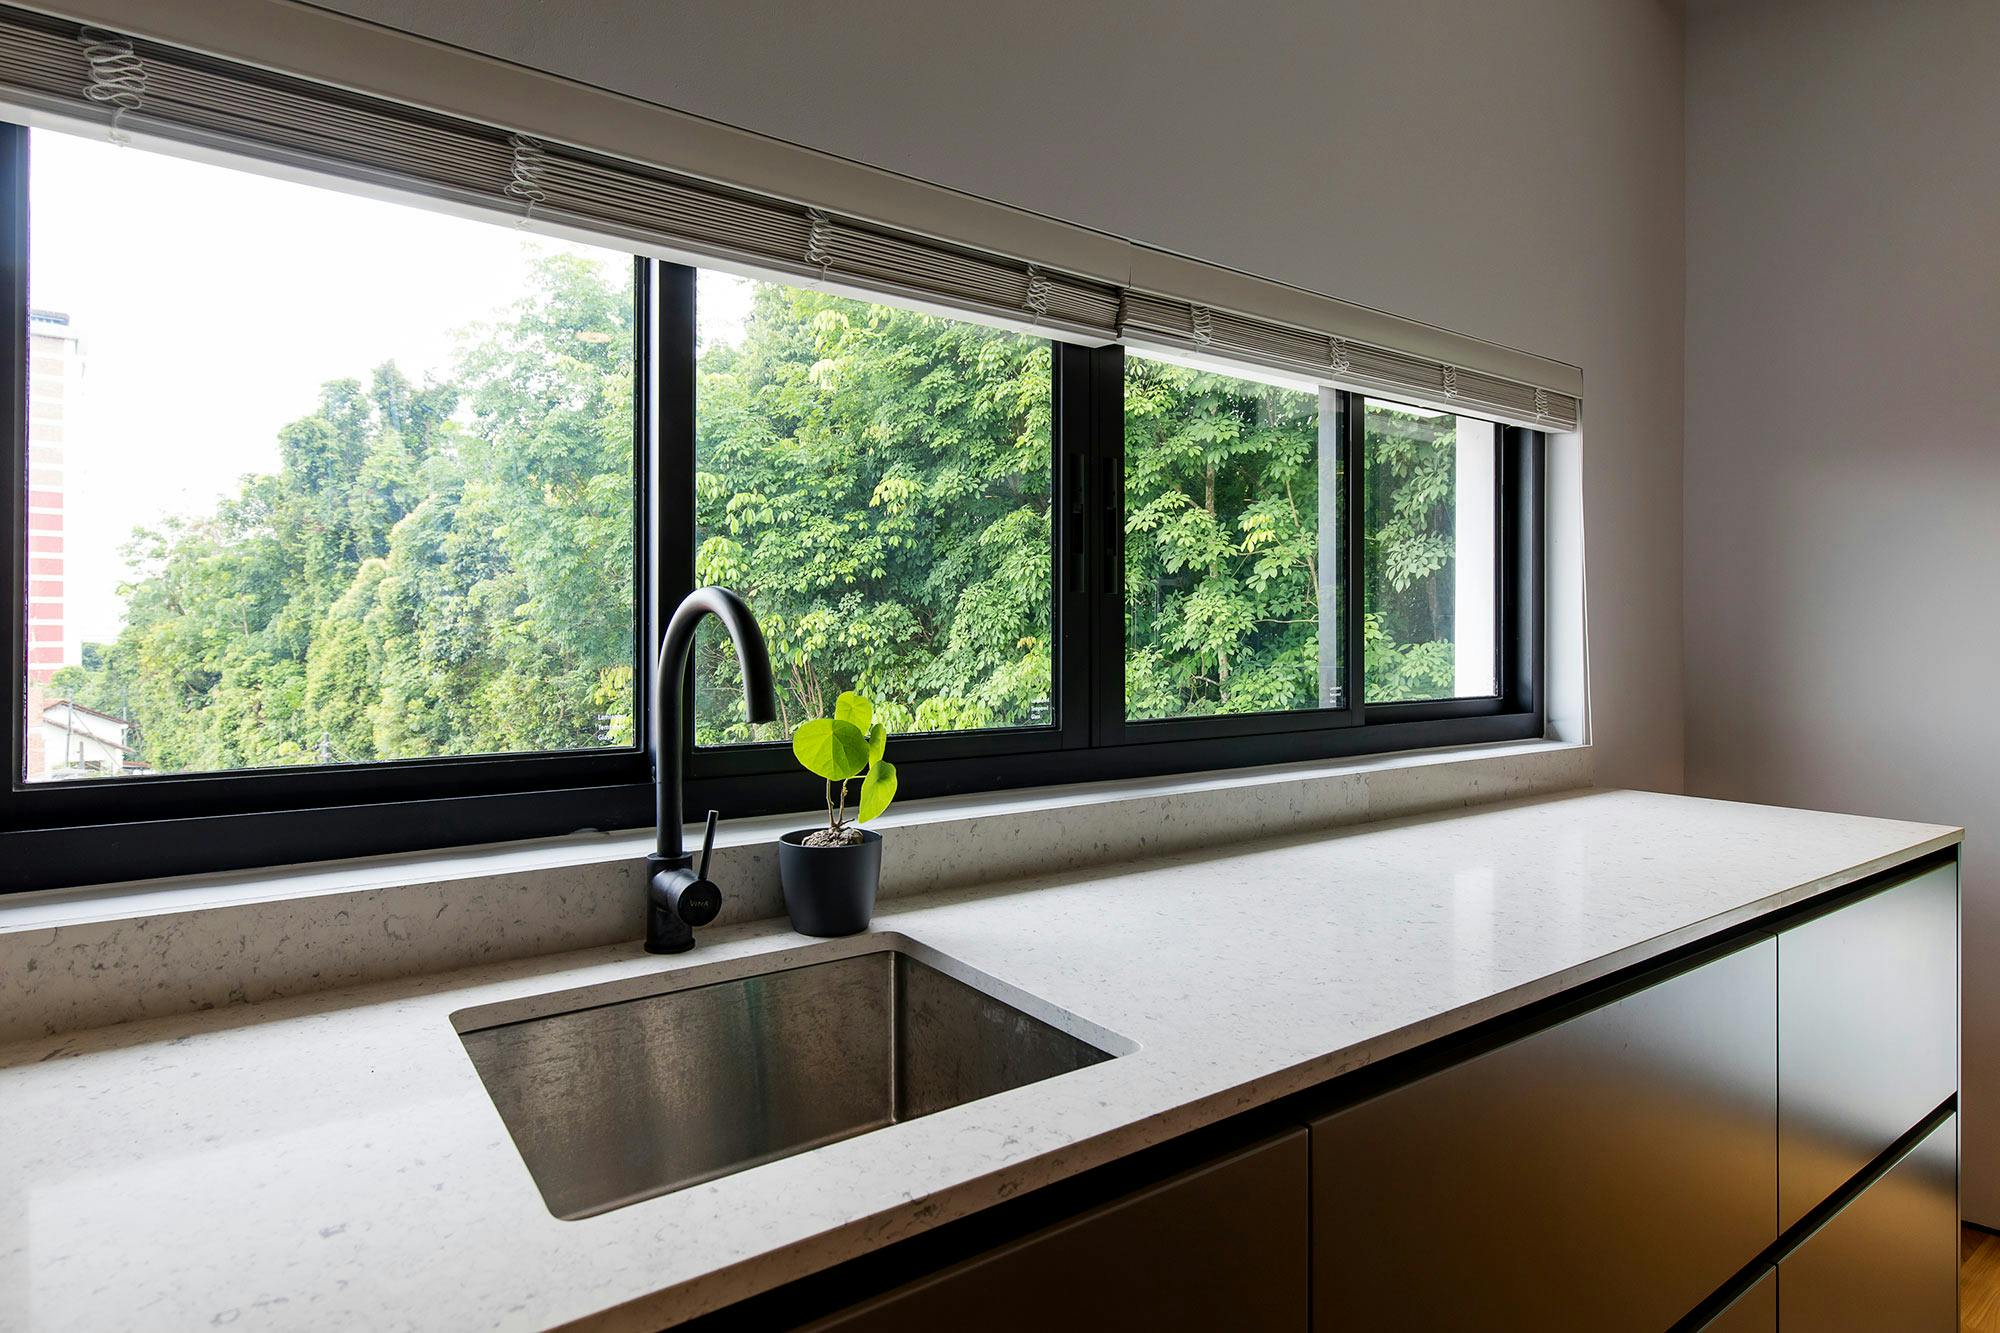 Bildnummer 37 des aktuellen Abschnitts von DKTN, the material of choice for easy-to-clean, UV and humidity resistant surfaces in a modern villa von Cosentino Deutschland